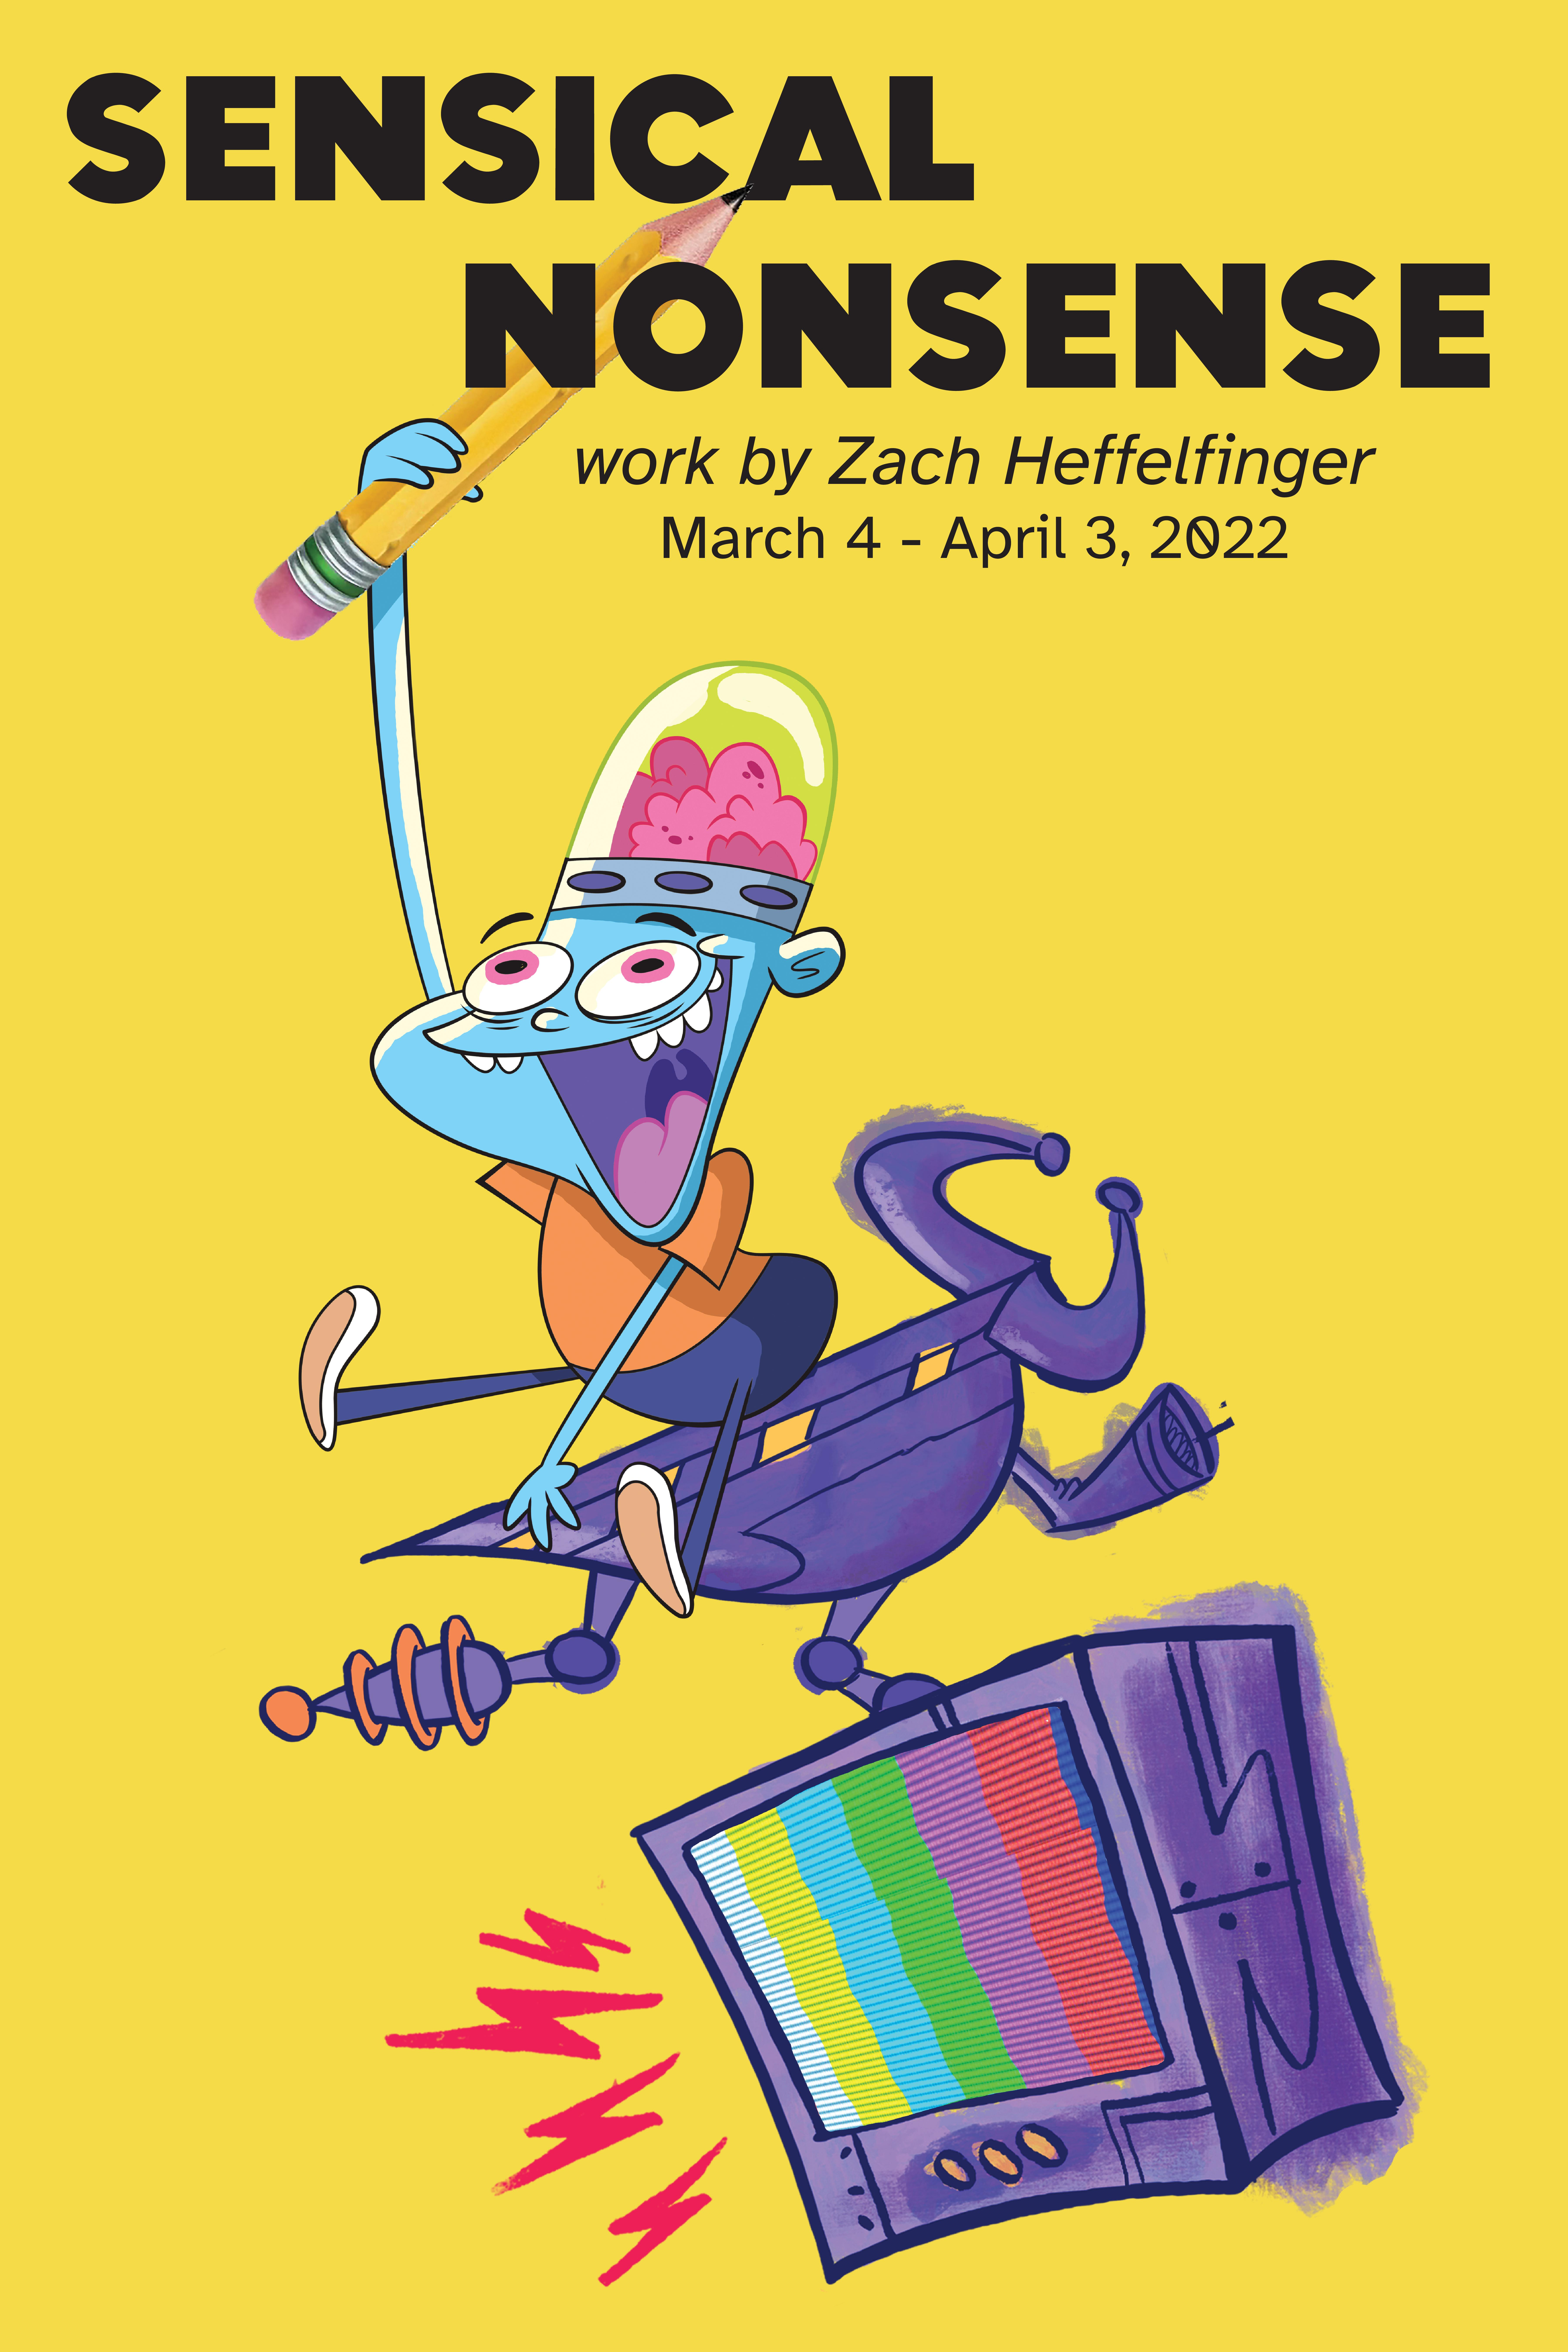 Sensical Nonsense branding for show of Zach Heffelfinger '14, Illustration